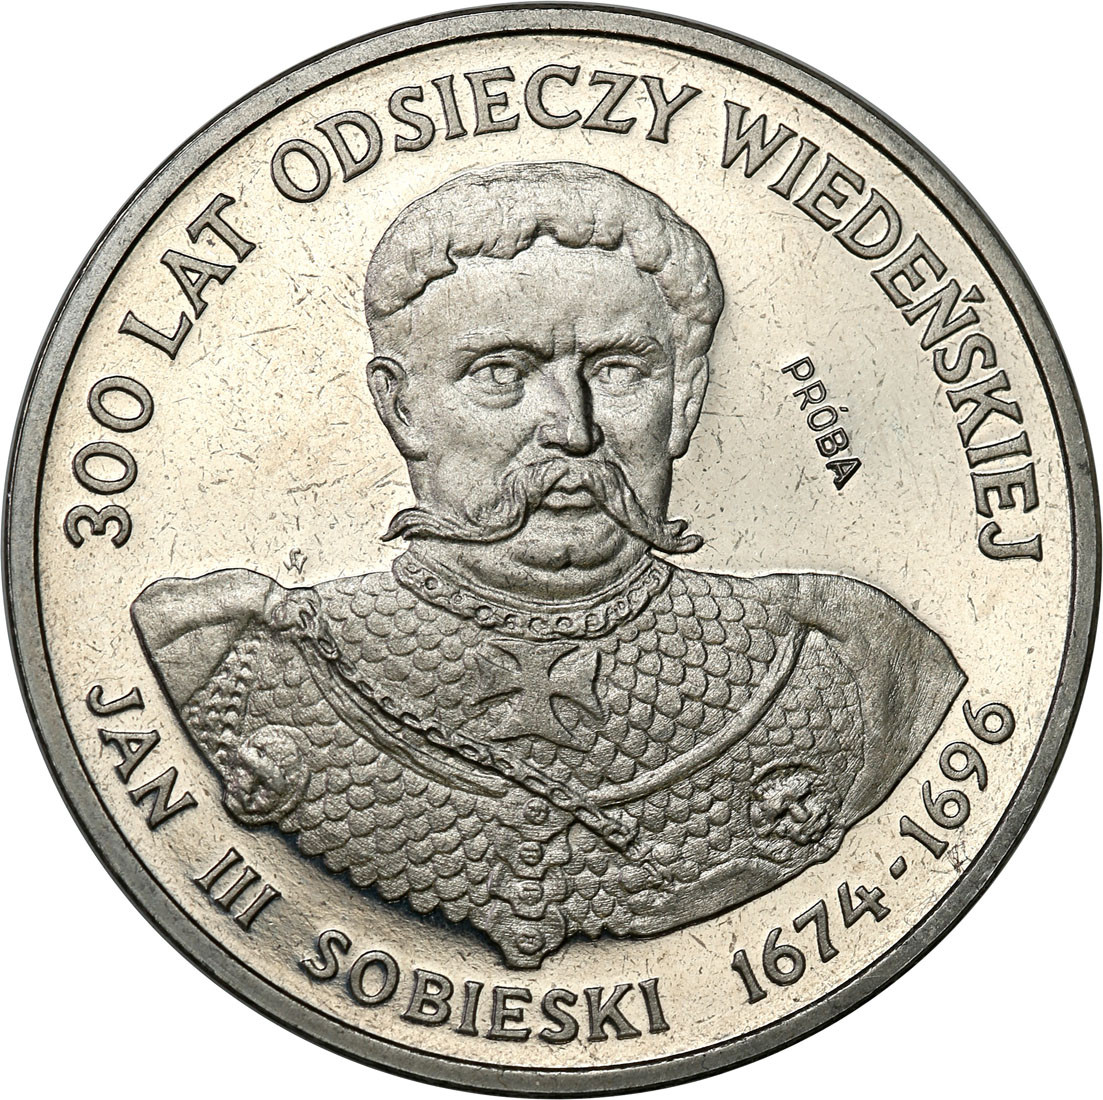 PRL. PRÓBA Nikiel 200 złotych 1983 Odsiecz Wiedeńska - Jan III Sobieski